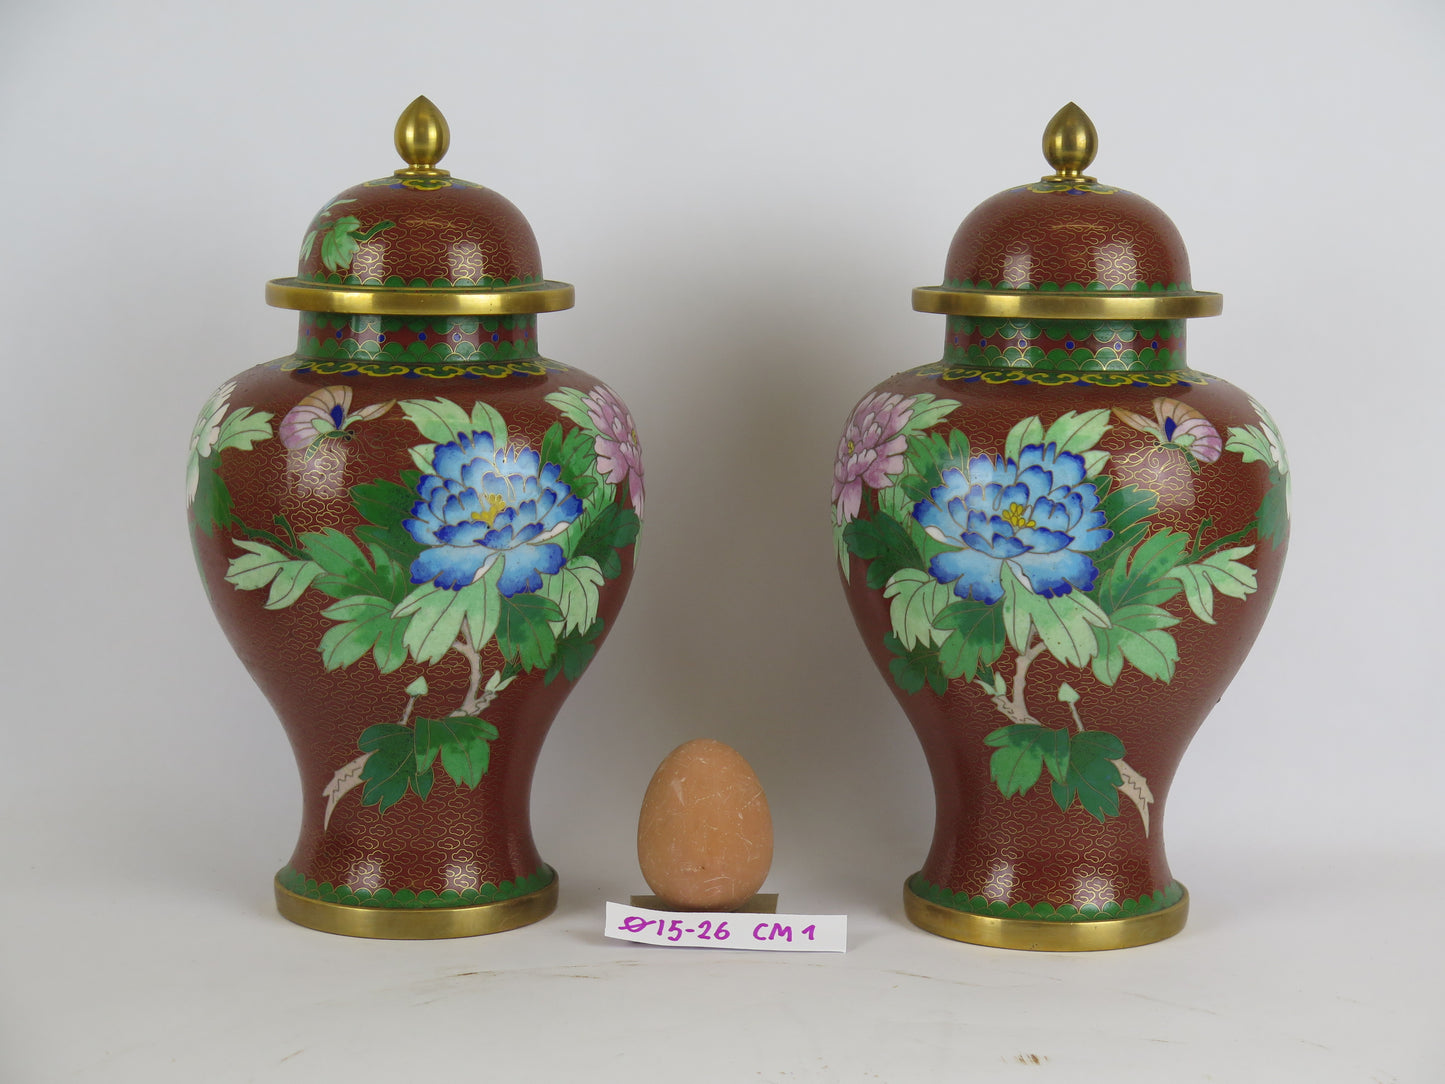 Pair of potiche cloisonnè vases vintage China Asia enamel flowers floral CM1